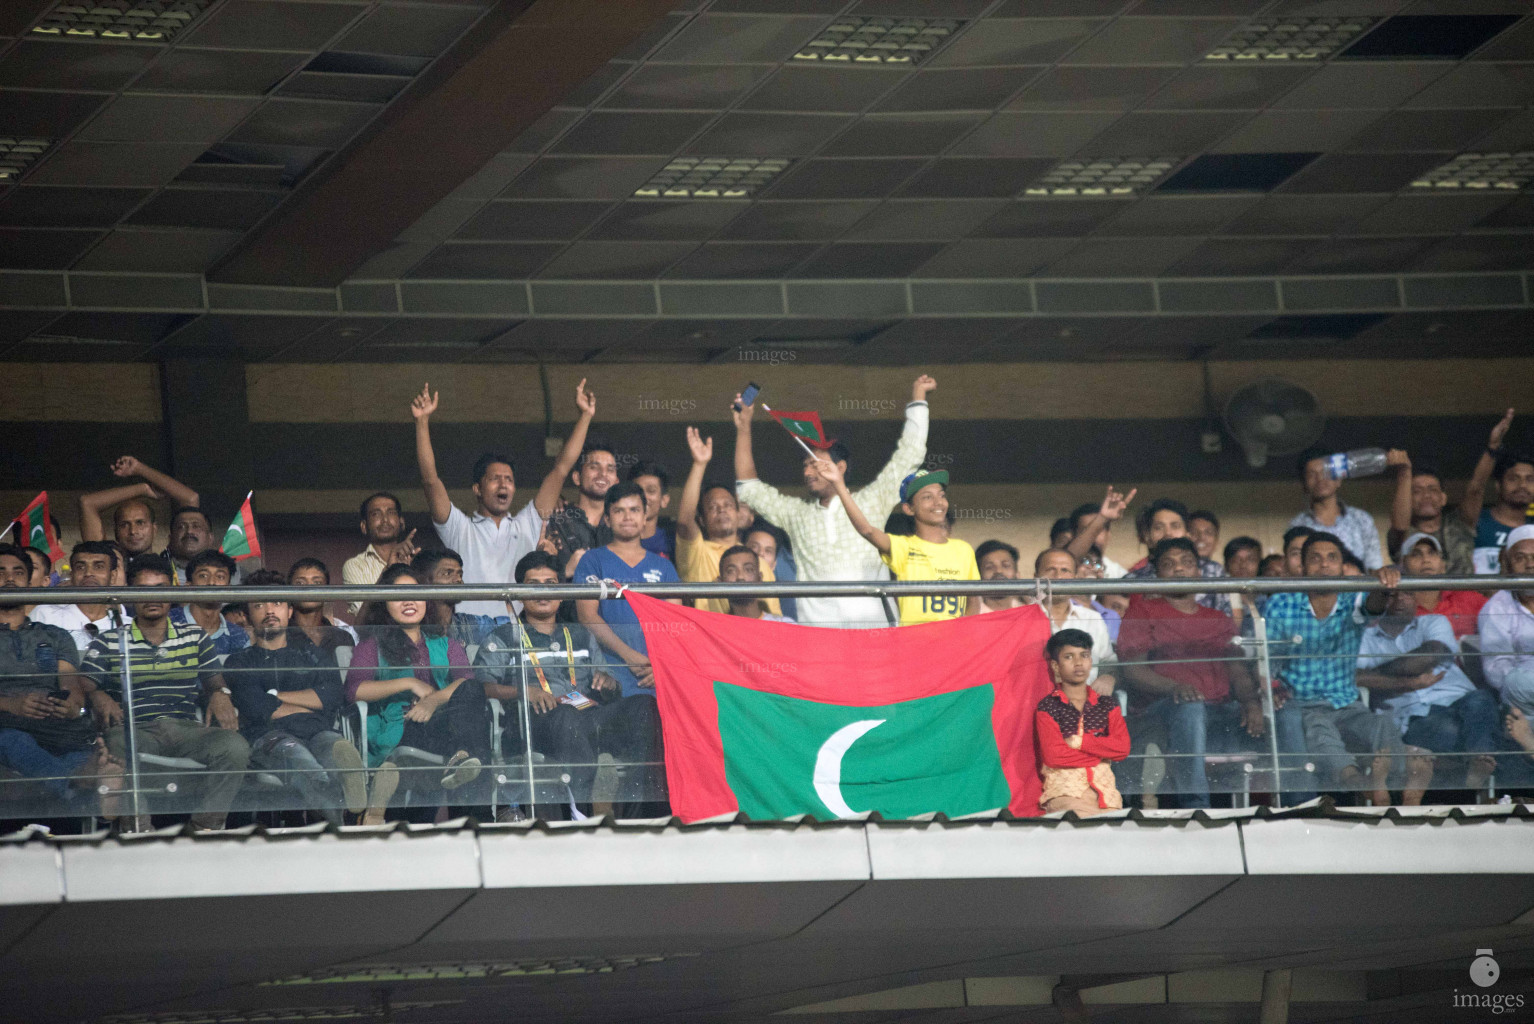 Maldives vs Sri Lanka in SAFF Suzuki Cup 2018 in Dhaka, Bangladesh, Friday, September 07, 2018. (Images.mv Photo/Ismail Thoriq)